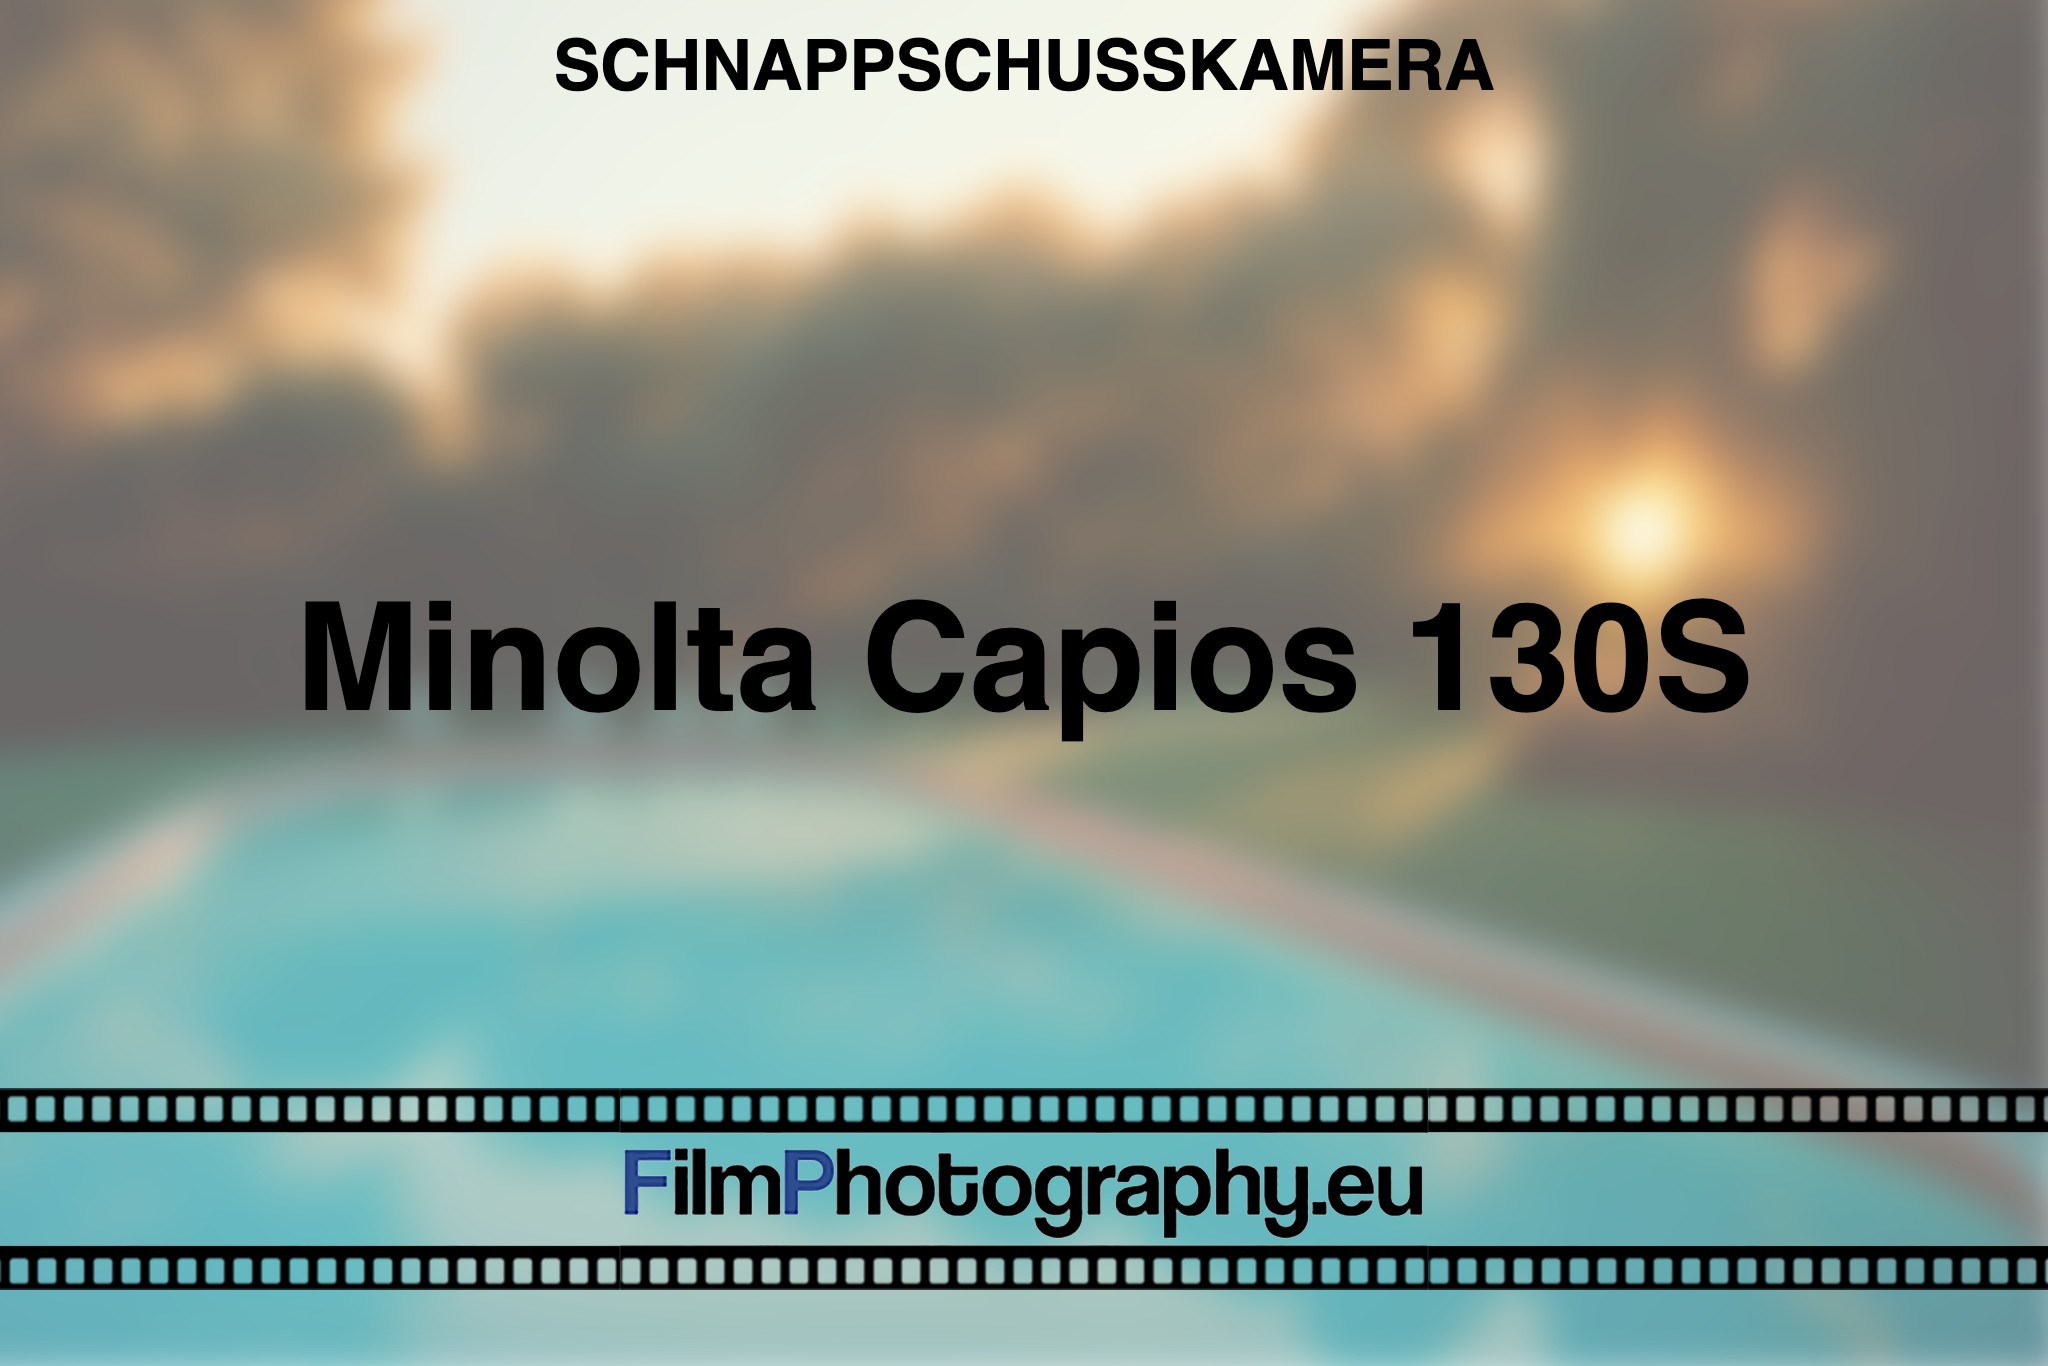 minolta-capios-130s-schnappschusskamera-bnv